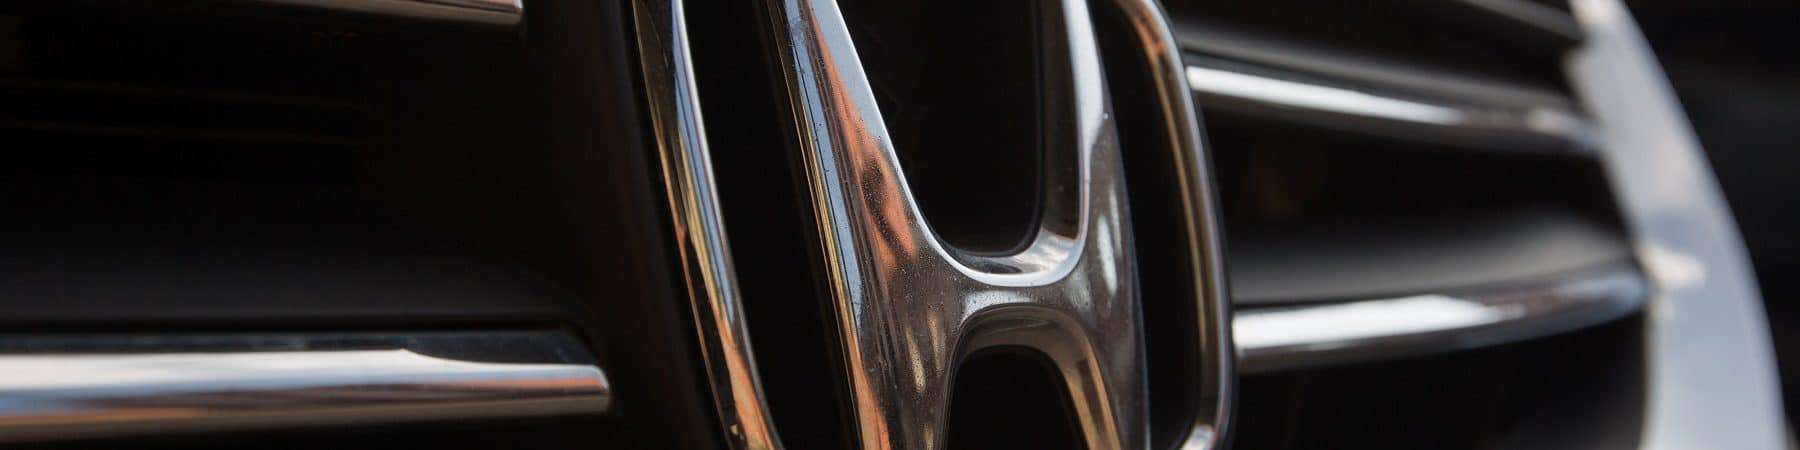 Detalhe do símbolo da Honda em carro SUV